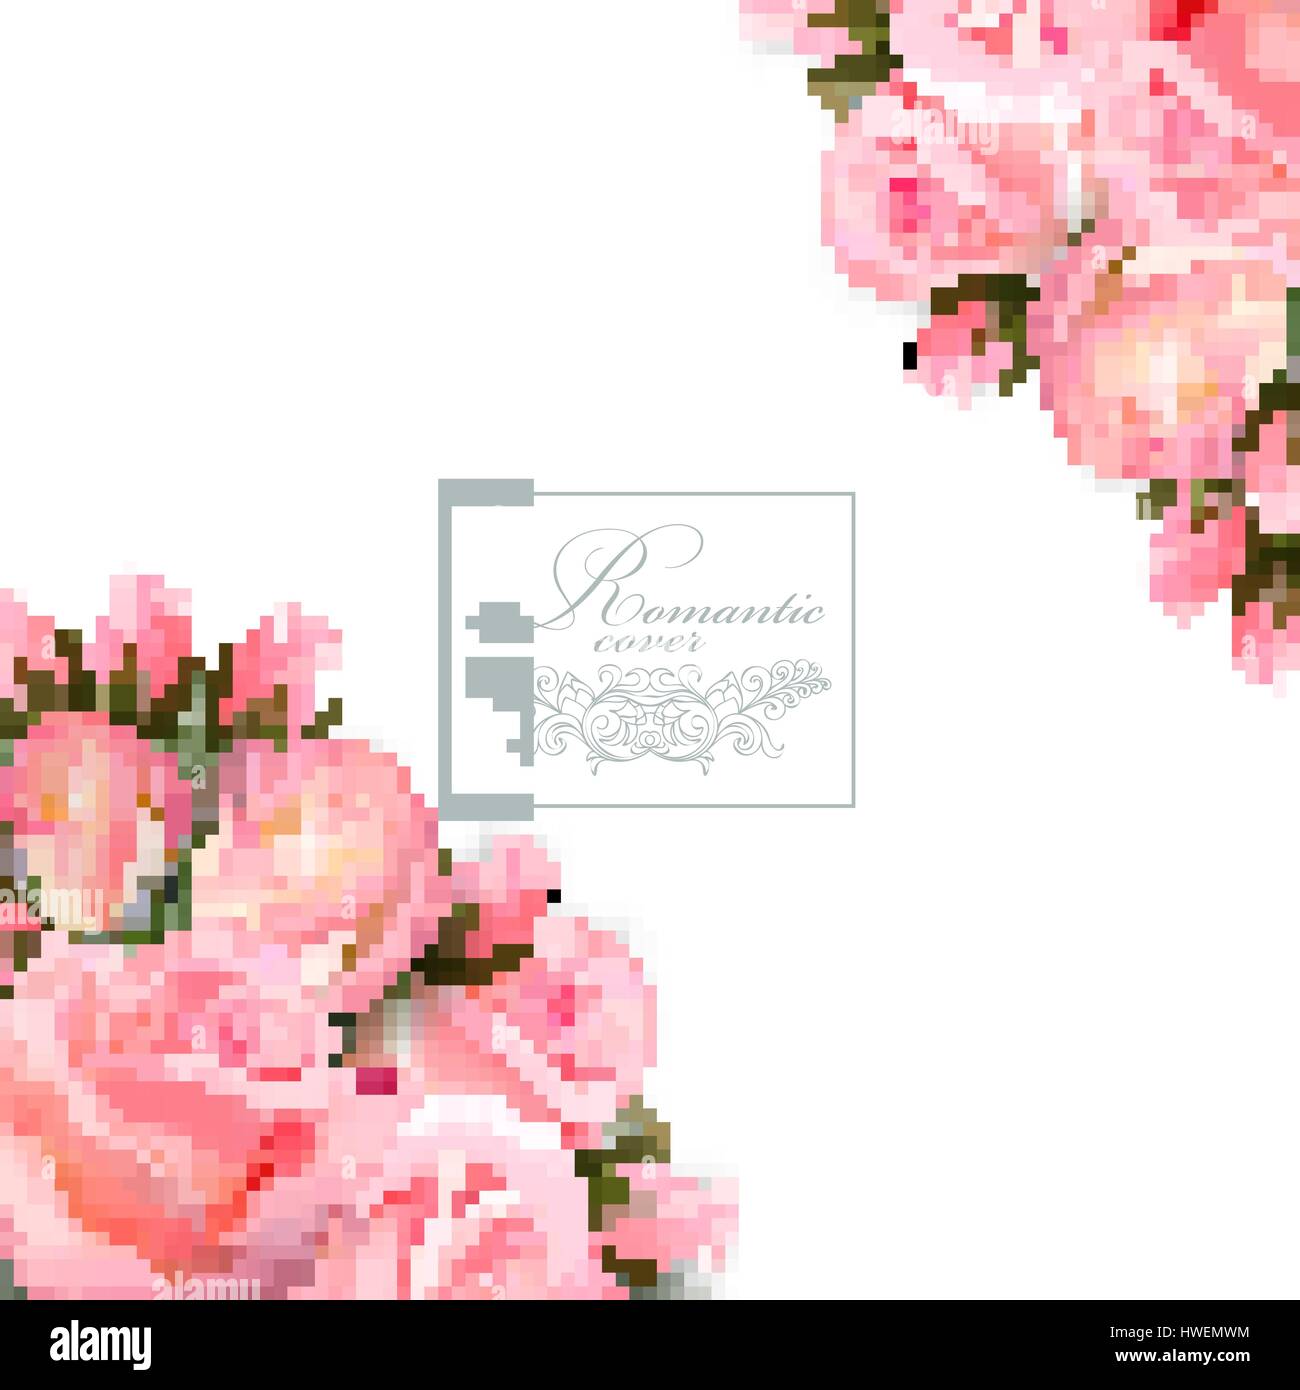 Vektor-Hintergrund mit rosa Rosen Blumen und grünen Blättern. Stock Vektor